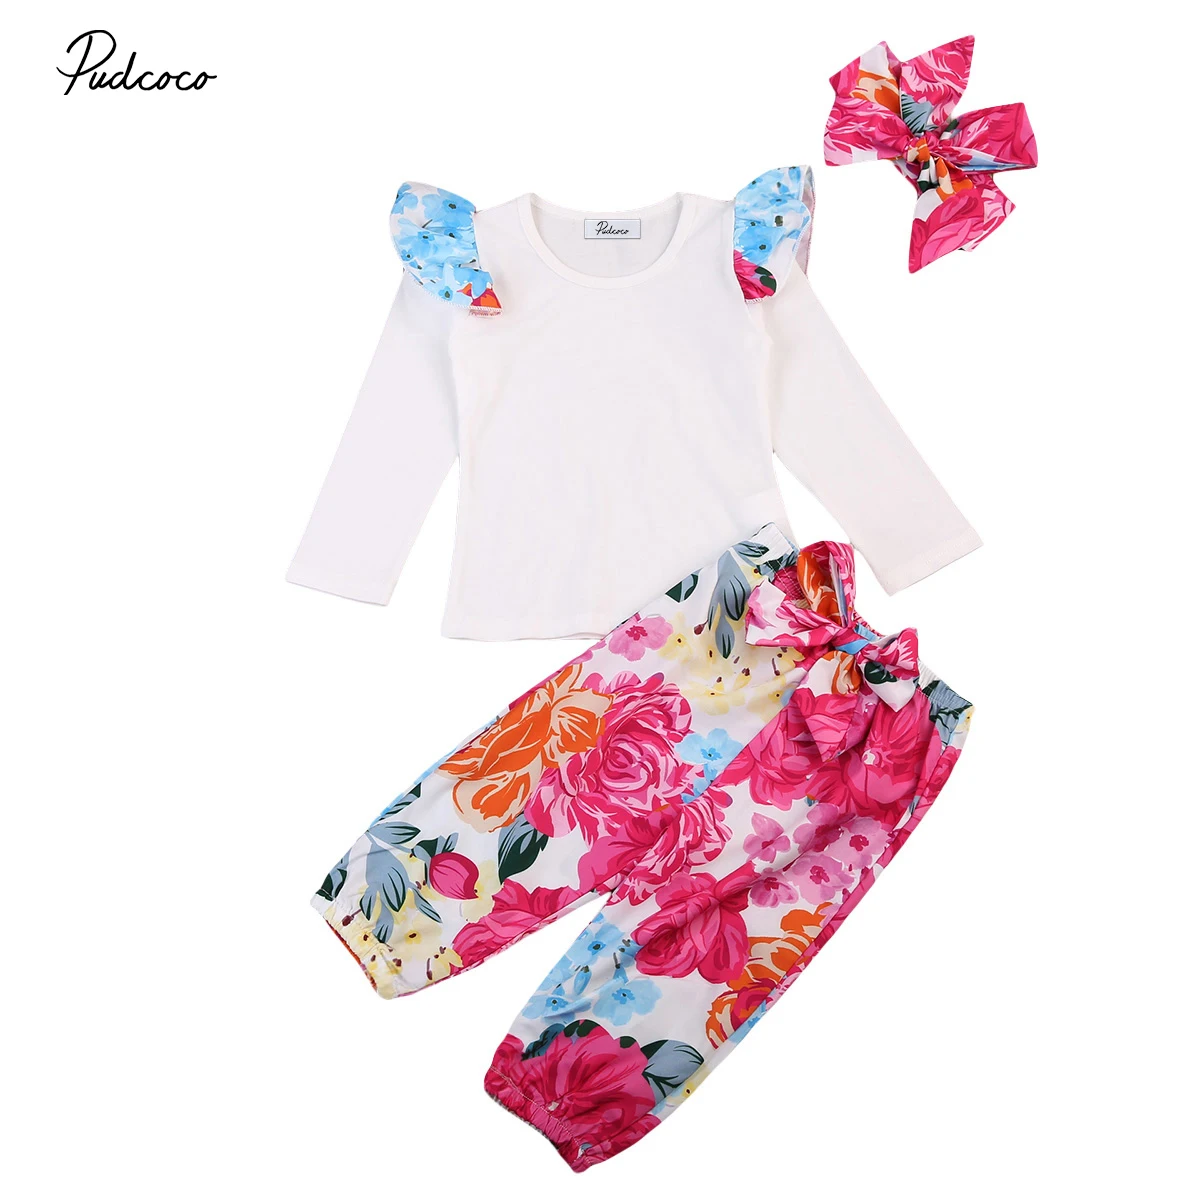 Pudcoco/милый комплект из 3 предметов, футболка с длинными рукавами для новорожденных девочек + штаны с цветочным принтом, одежда для детей от 0